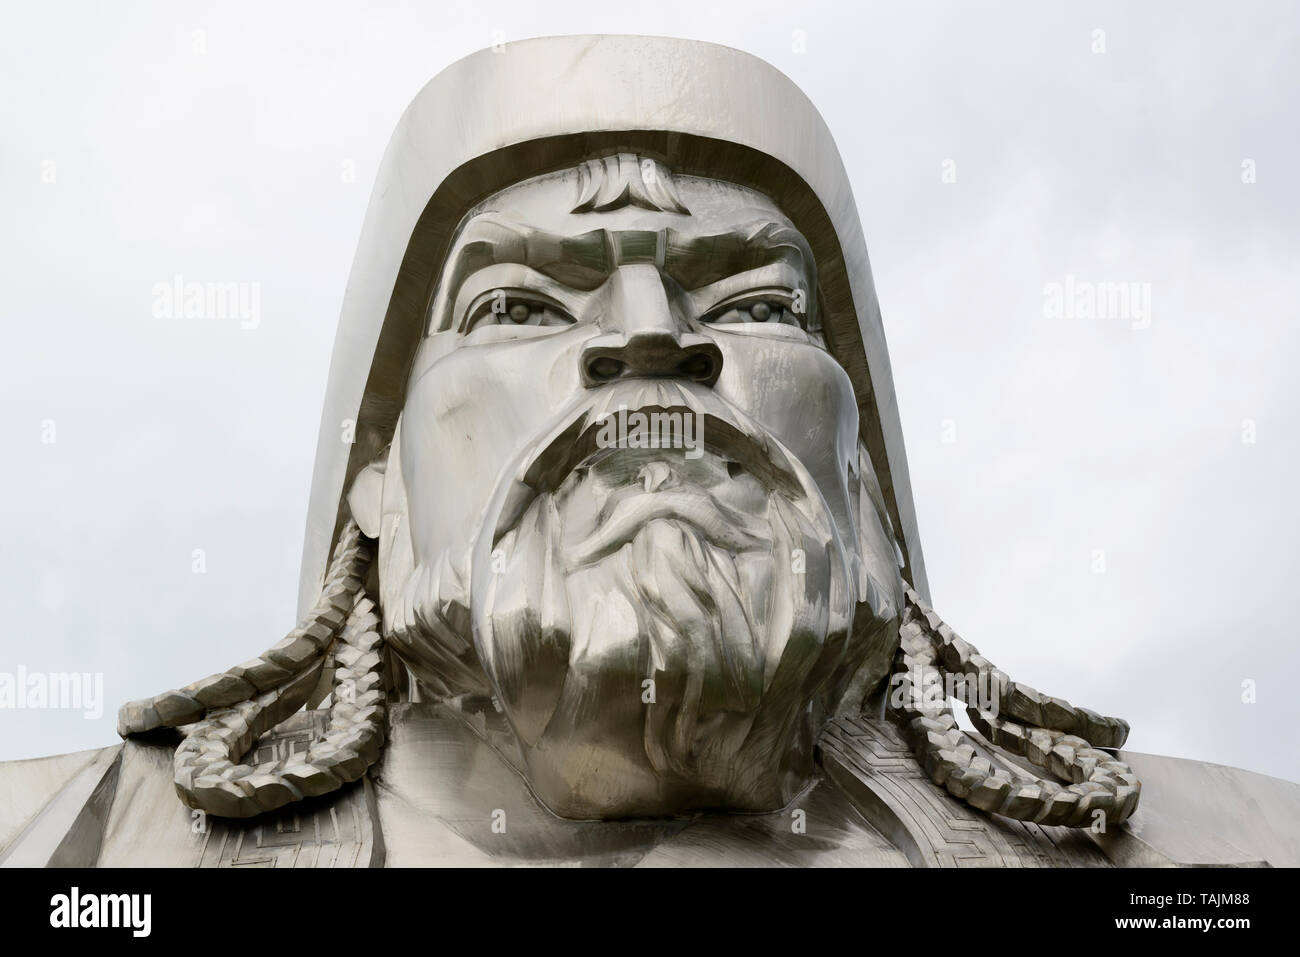 La Genghis Khan Statue équestre, partie de la Statue de Gengis Khan, complexe 54 km à l'est d'Oulan-Bator, Mongolie. Banque D'Images